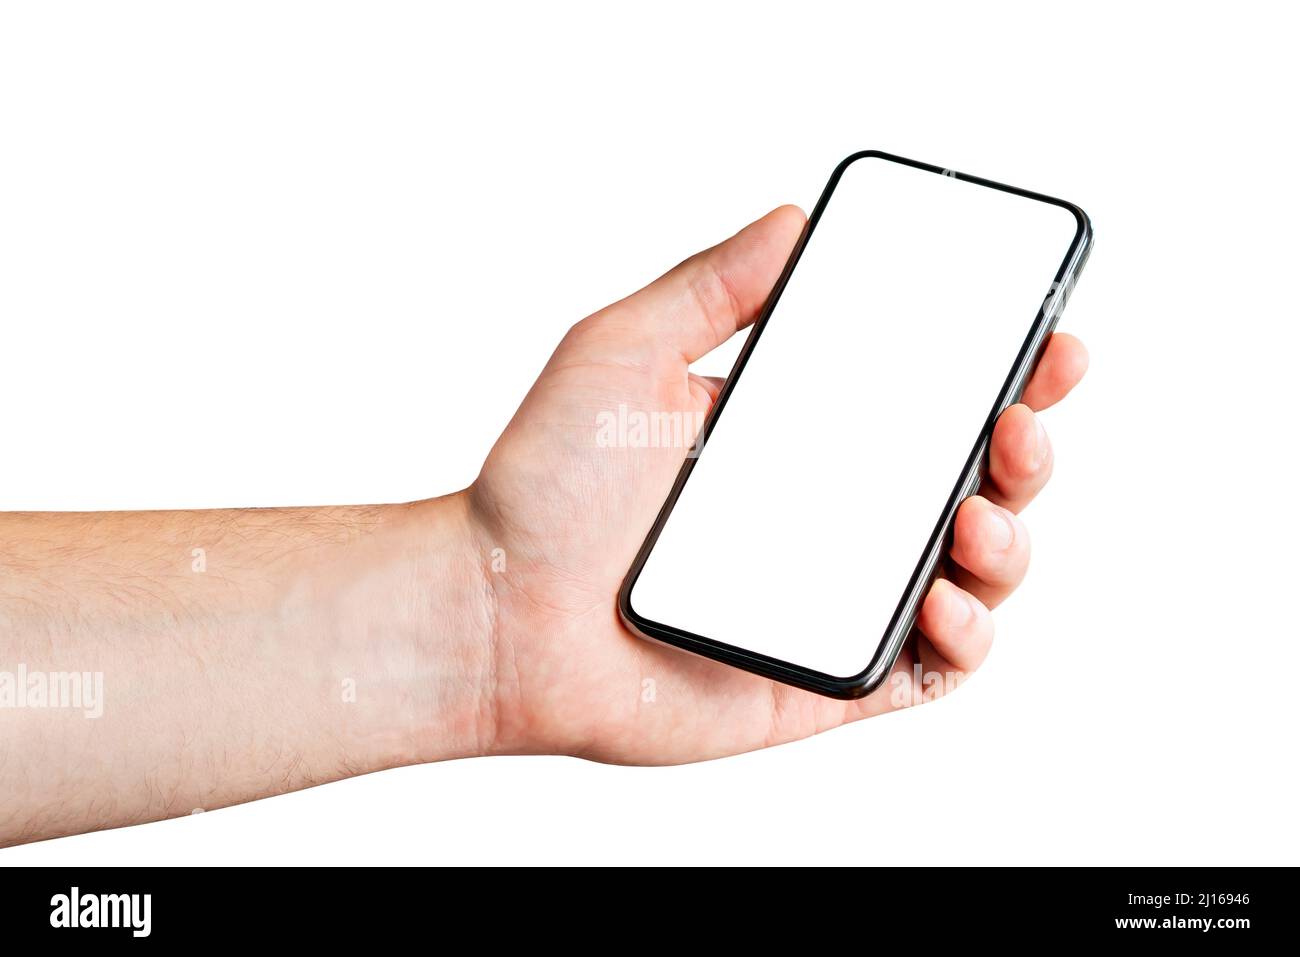 Téléphone en main, fond blanc. Homme tenant un téléphone cellulaire isolé. Écran vide pour la maquette ou l'application. Affichage vide pour la conception de l'application. Banque D'Images